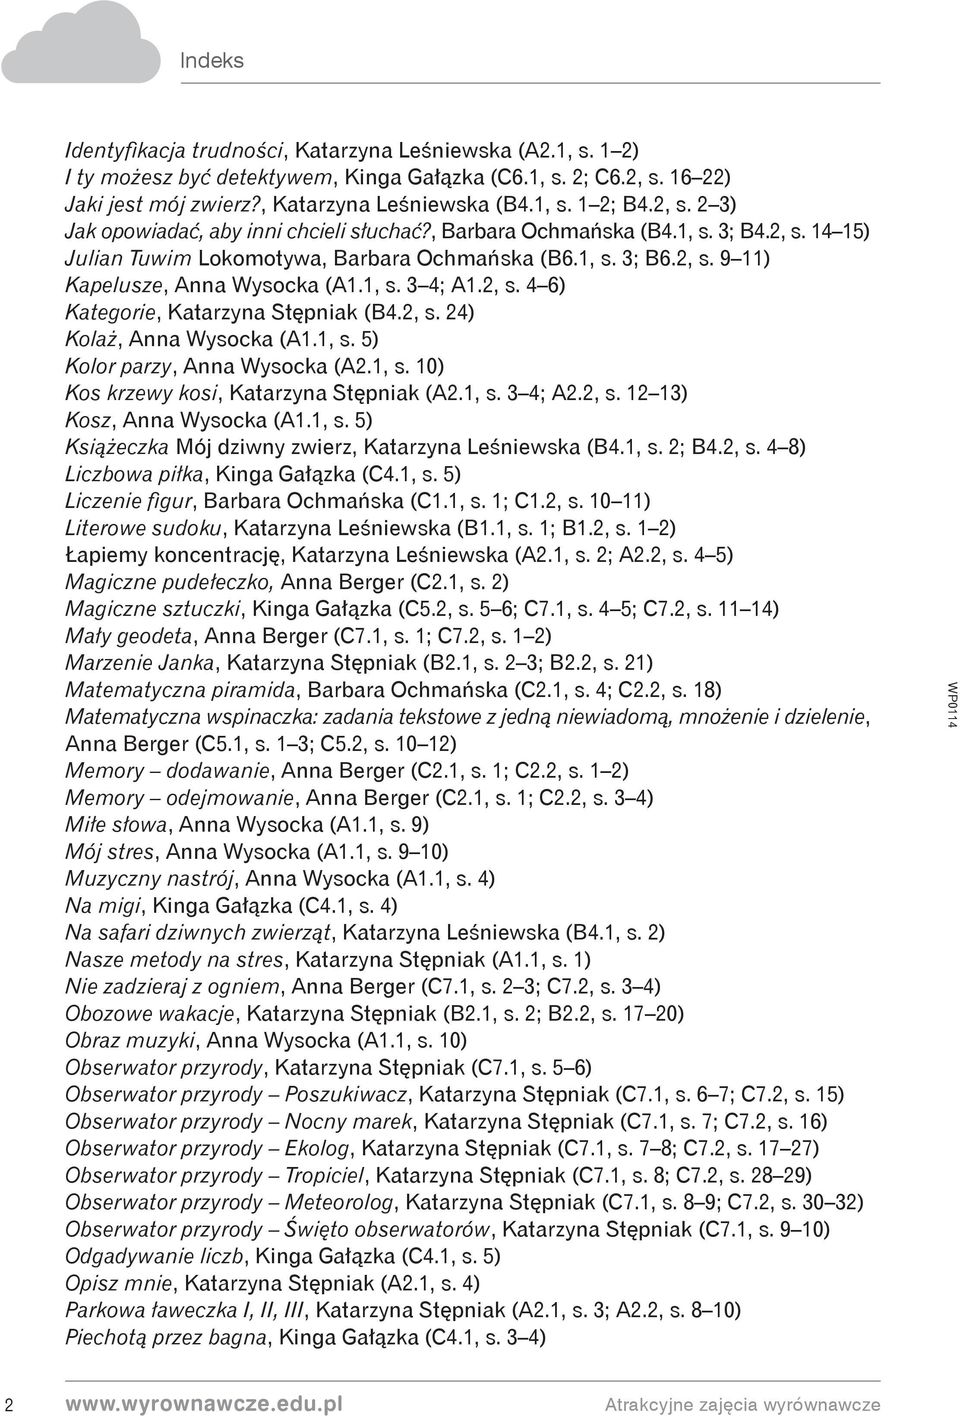 2, s. 24) Kolaż, Anna Wysocka (A1.1, s. 5) Kolor parzy, Anna Wysocka (A2.1, s. 10) Kos krzewy kosi, Katarzyna Stępniak (A2.1, s. 3 4; A2.2, s. 12 13) Kosz, Anna Wysocka (A1.1, s. 5) Książeczka Mój dziwny zwierz, Katarzyna Leśniewska (B4.